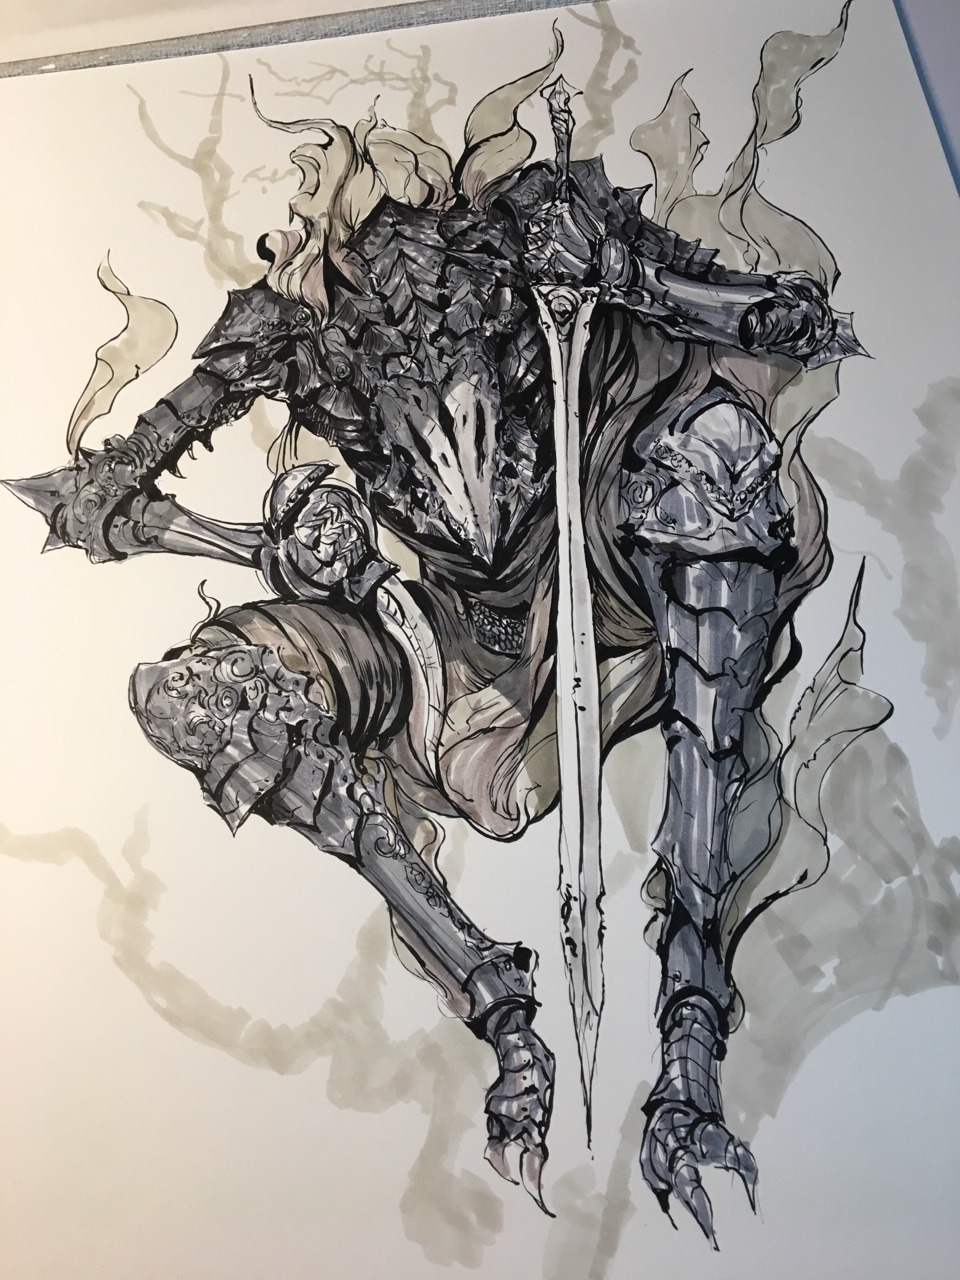 kekai-k:     Dark Knights drawing 